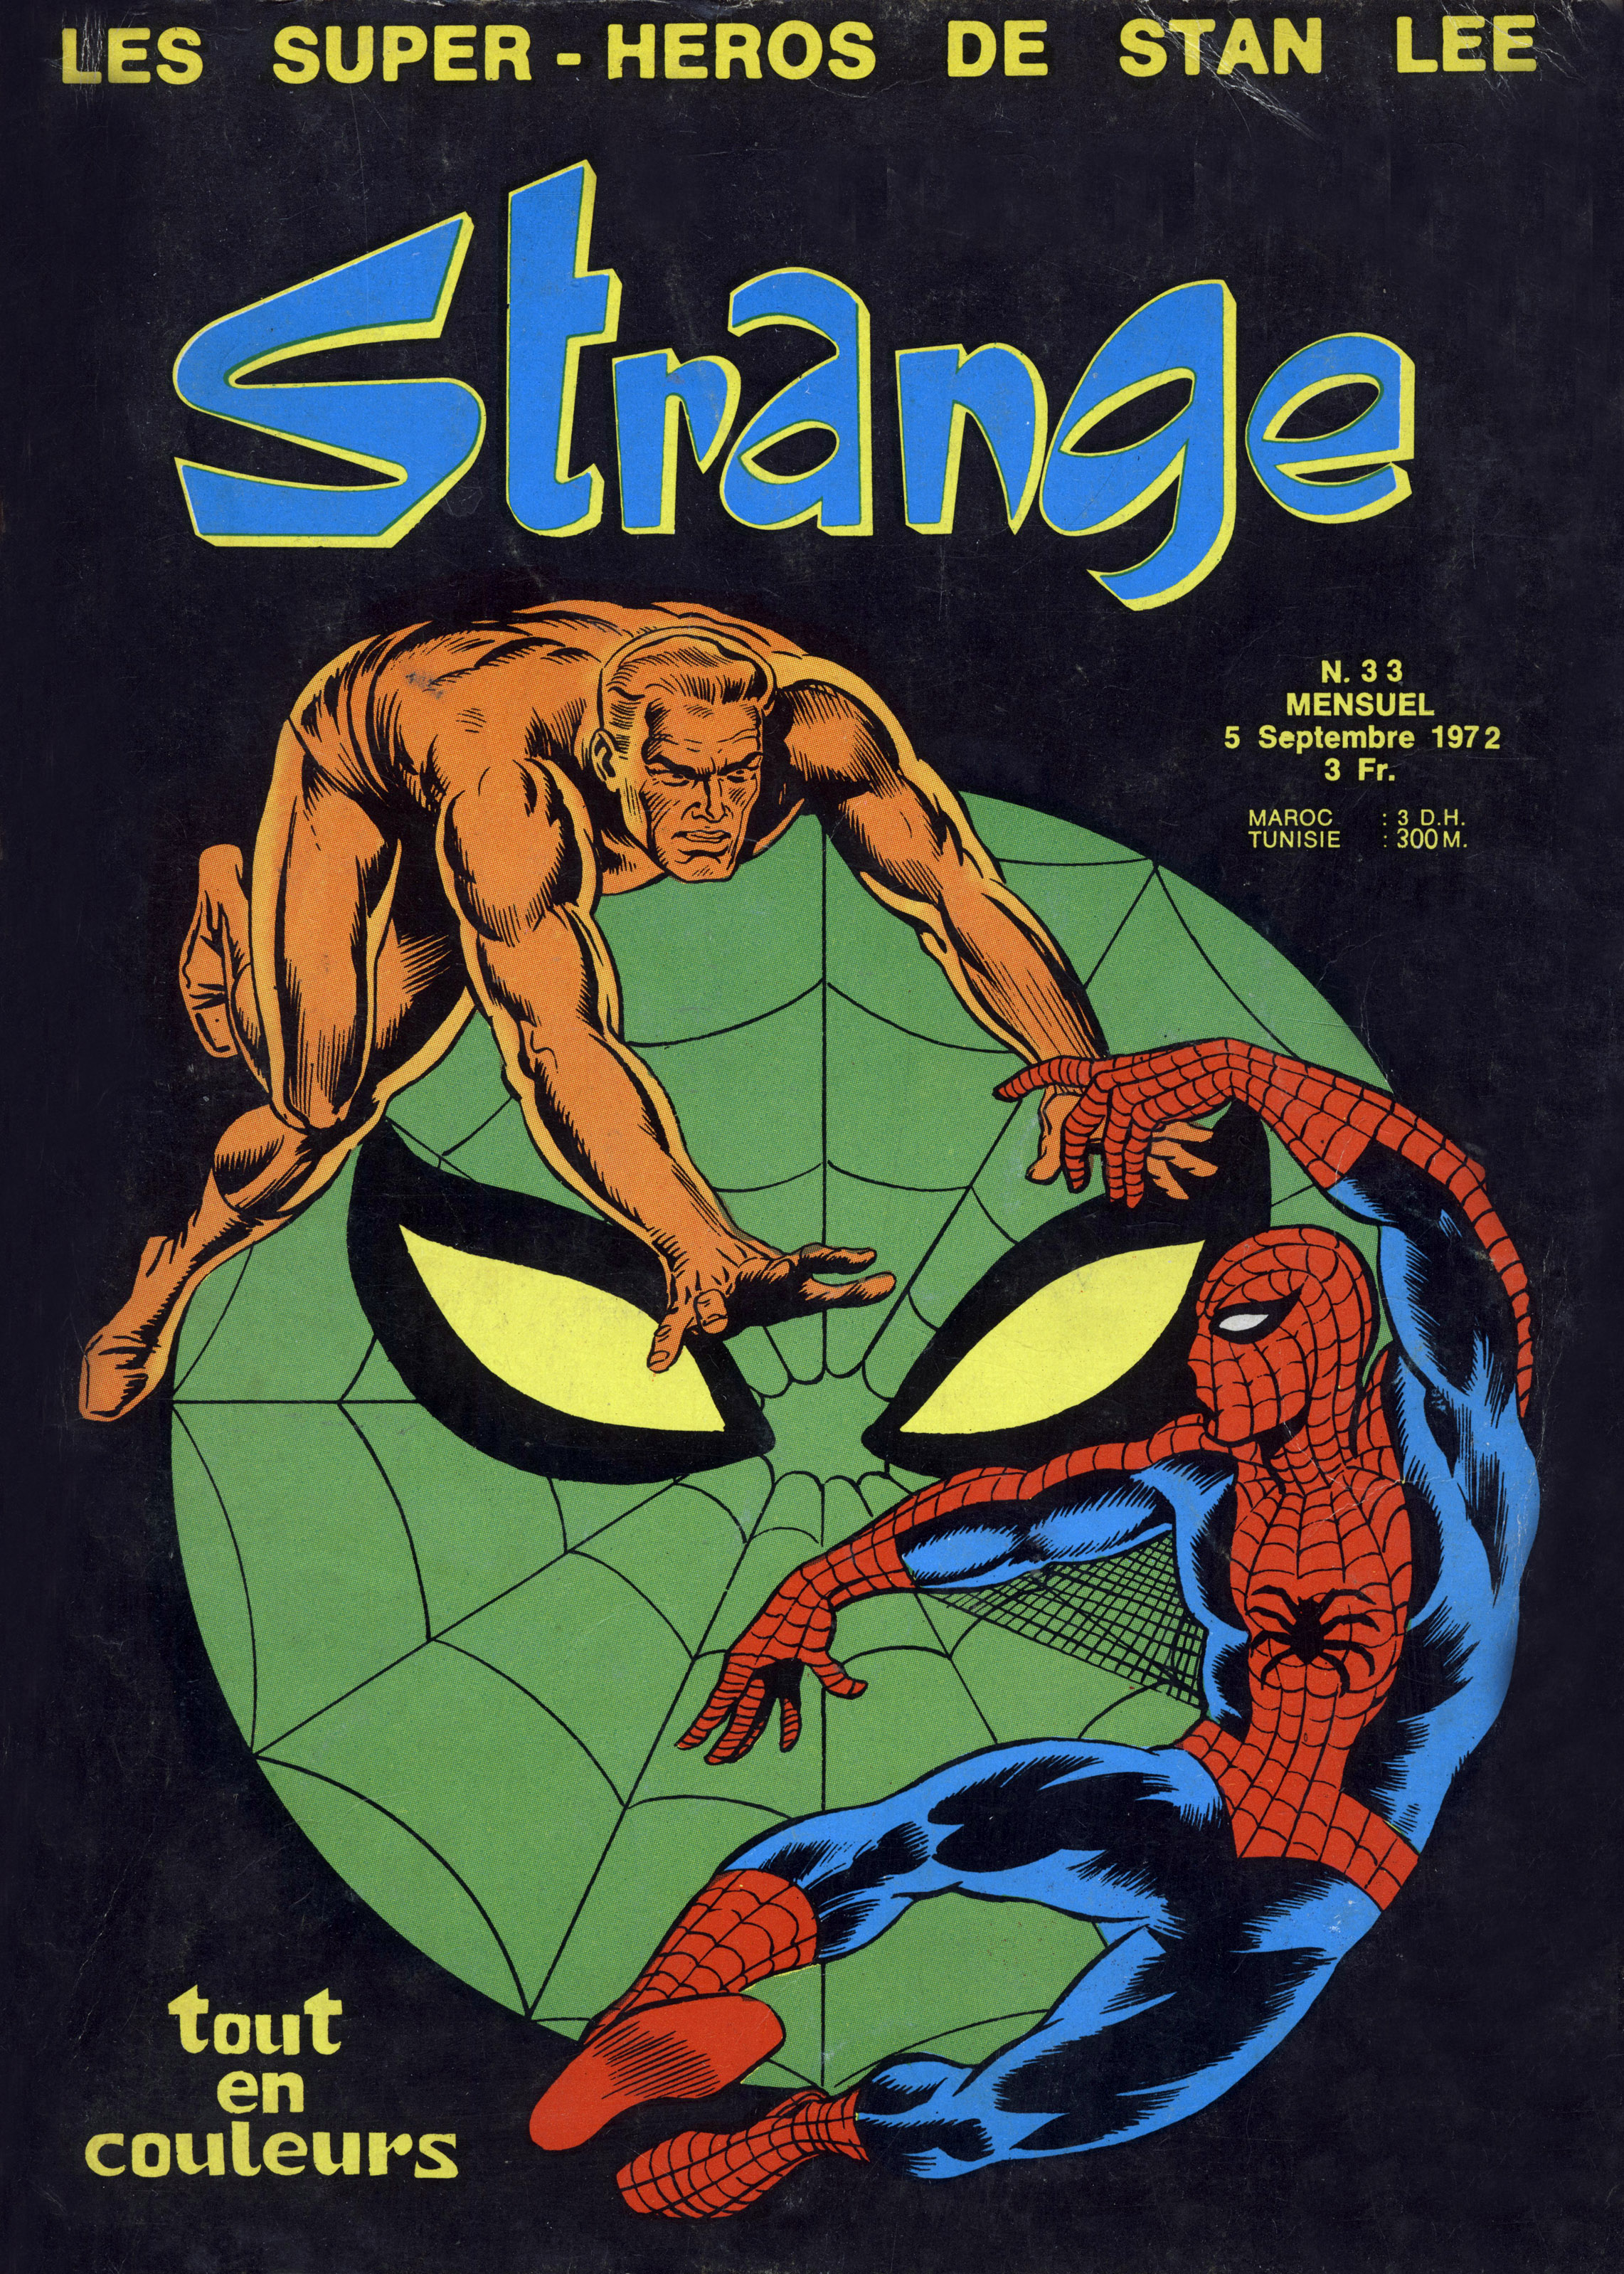 Cover of magazine Strange september 1972 with Spider Man